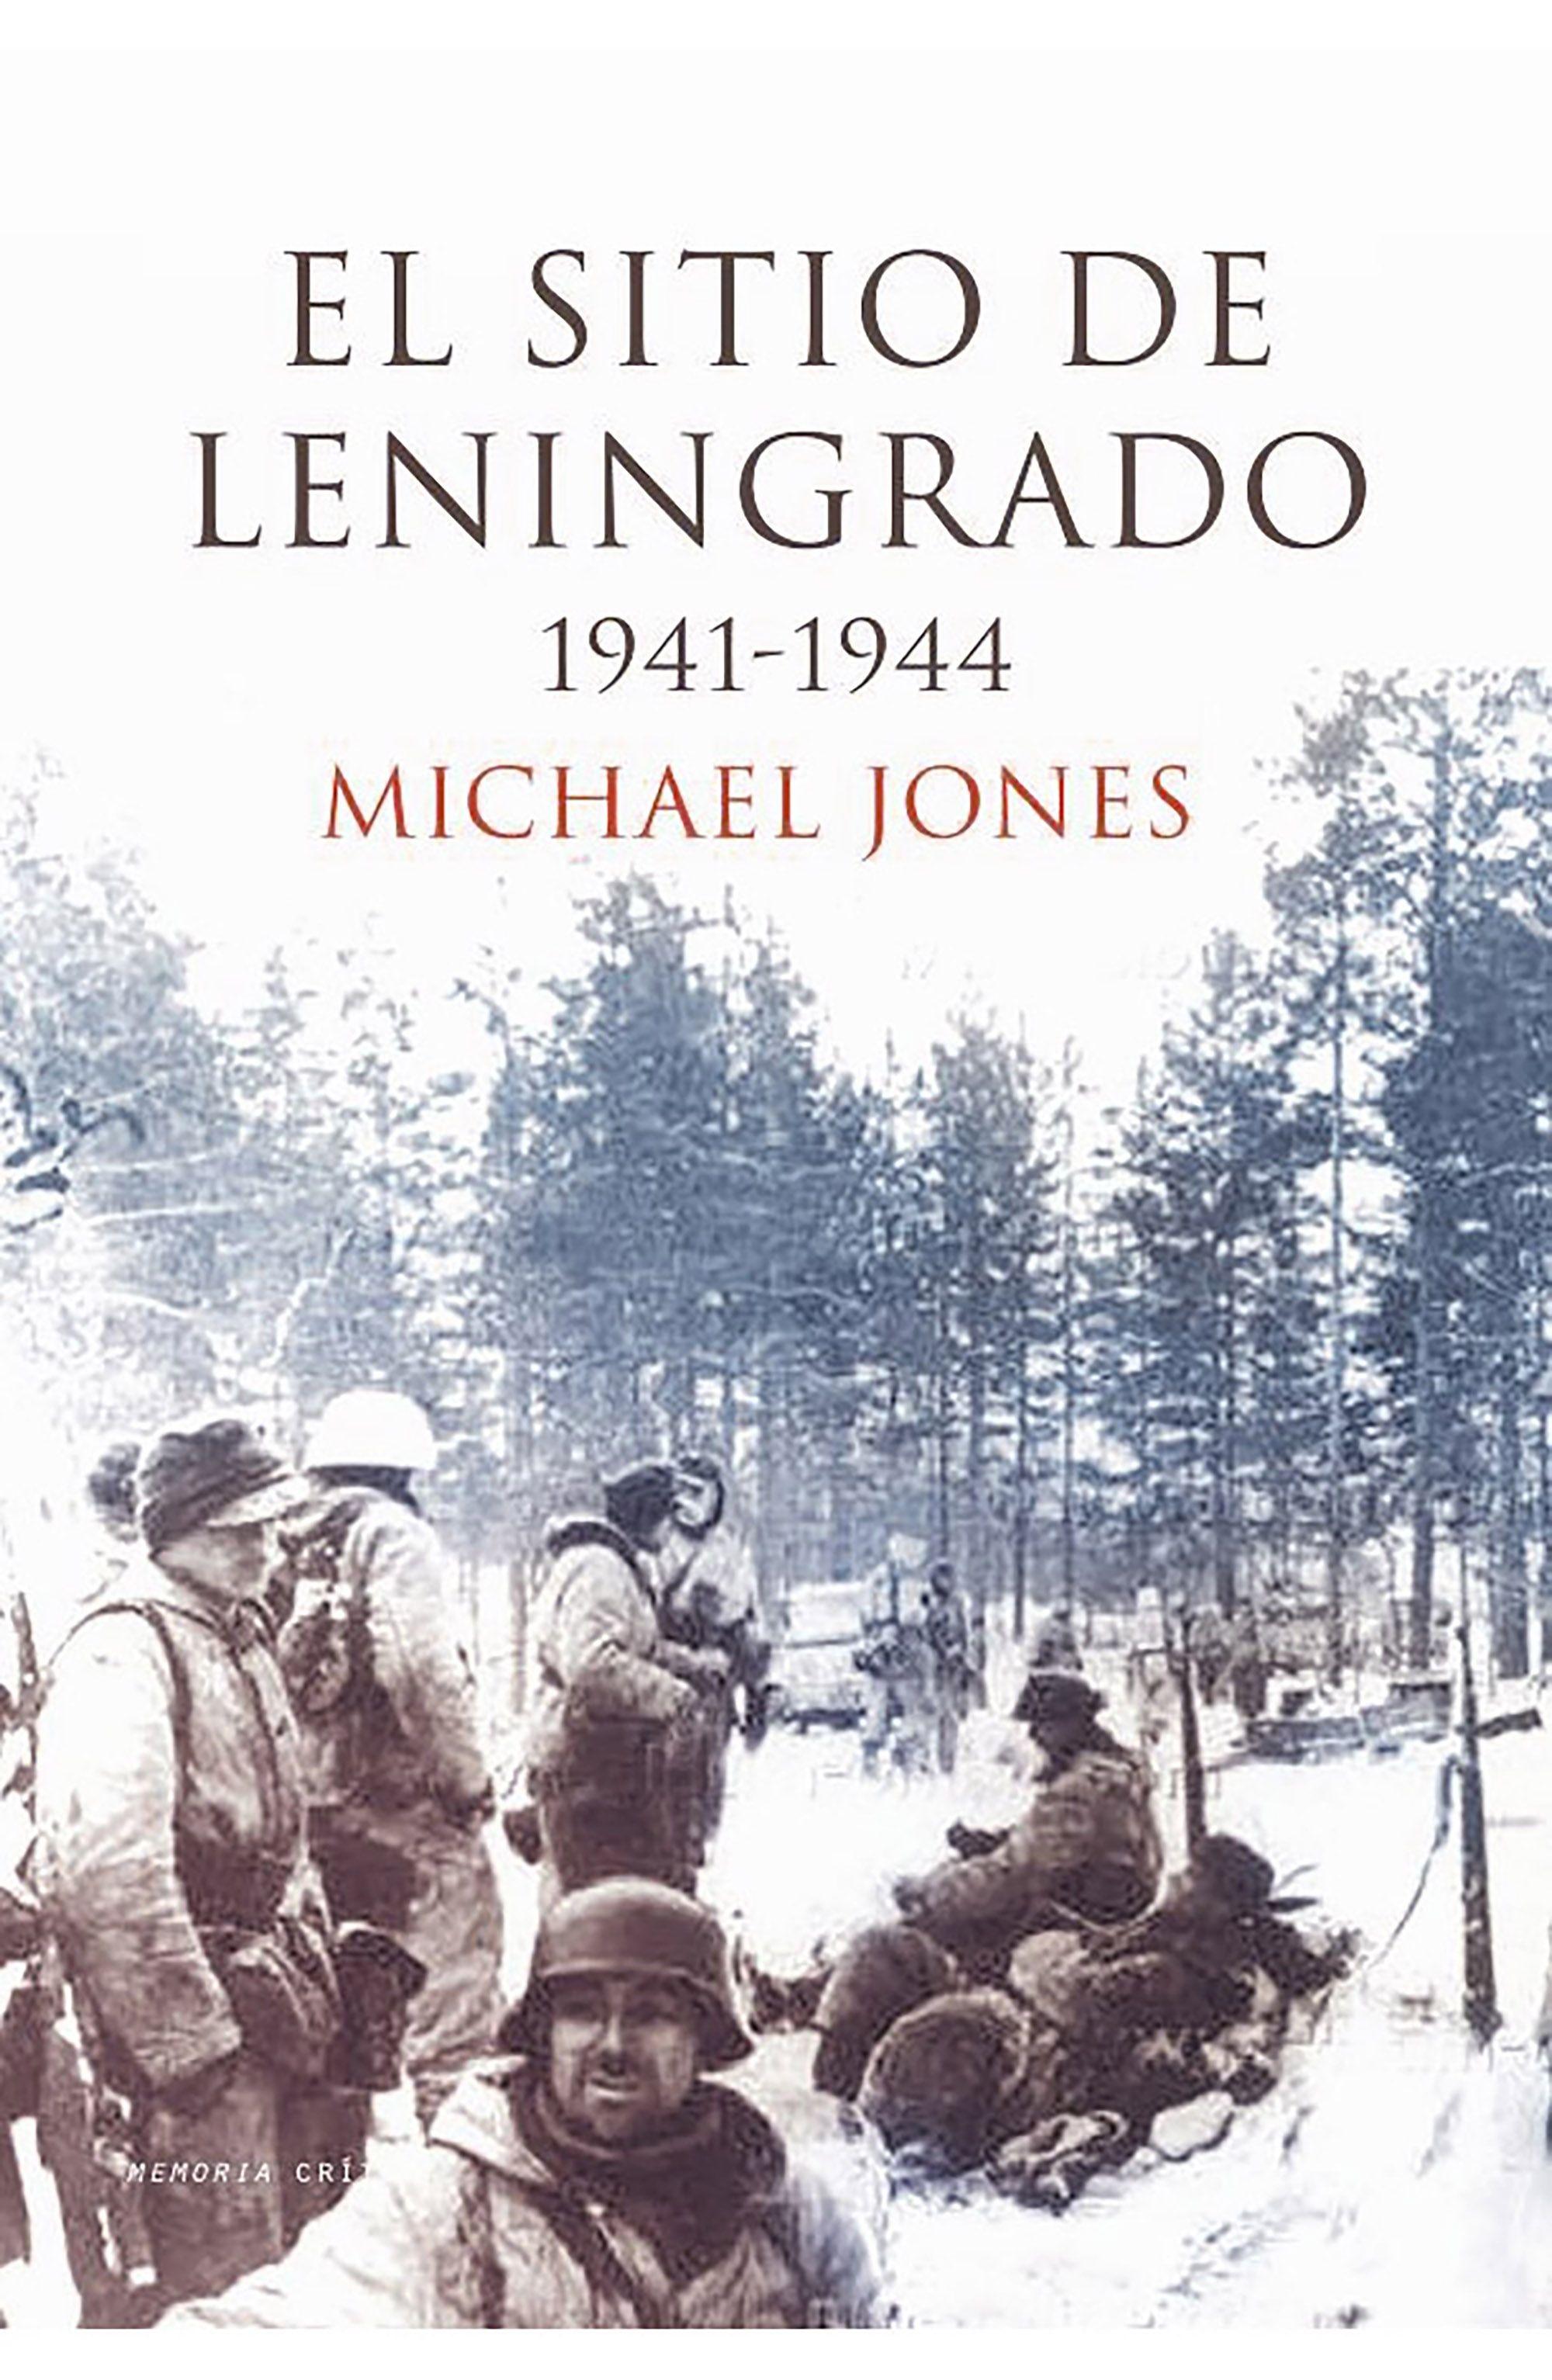 El Sitio de Leningrado "1941-1944"